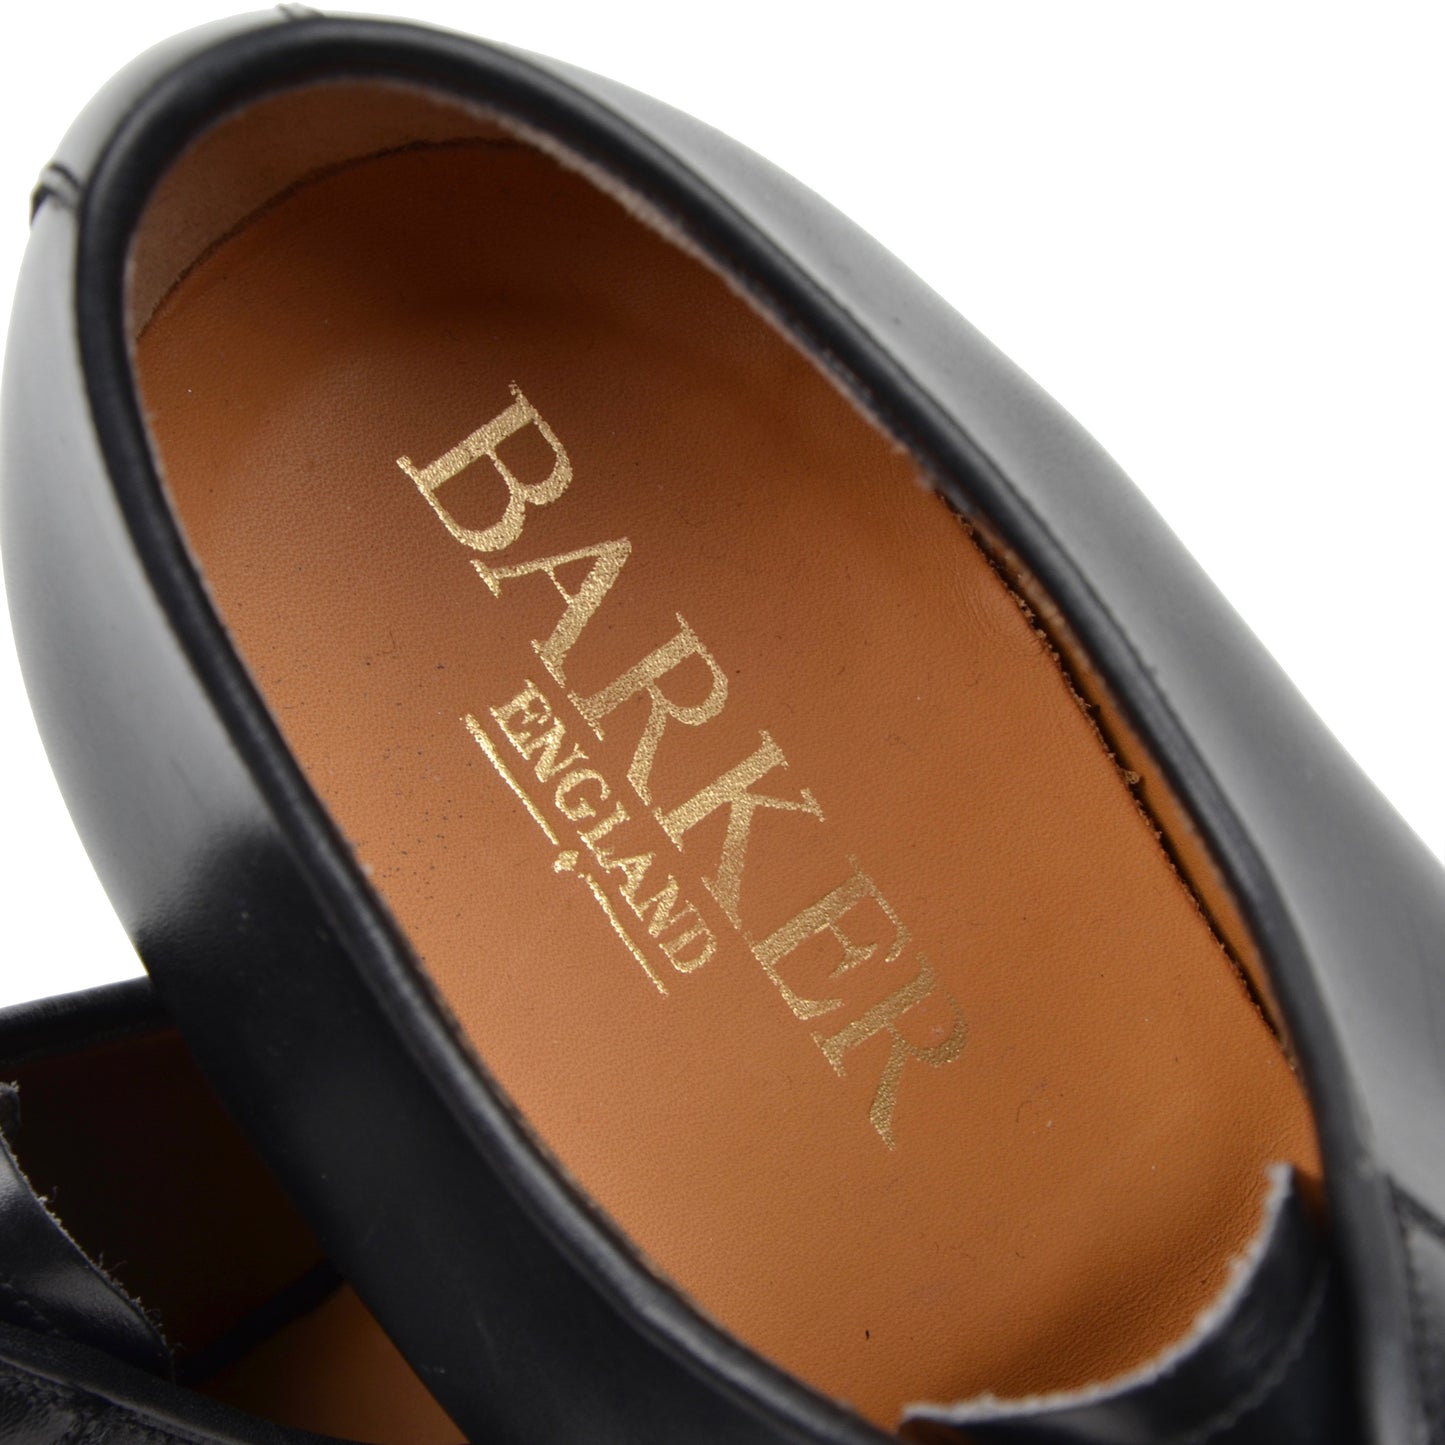 Barker England Shoes Size 10 F Wide - Black